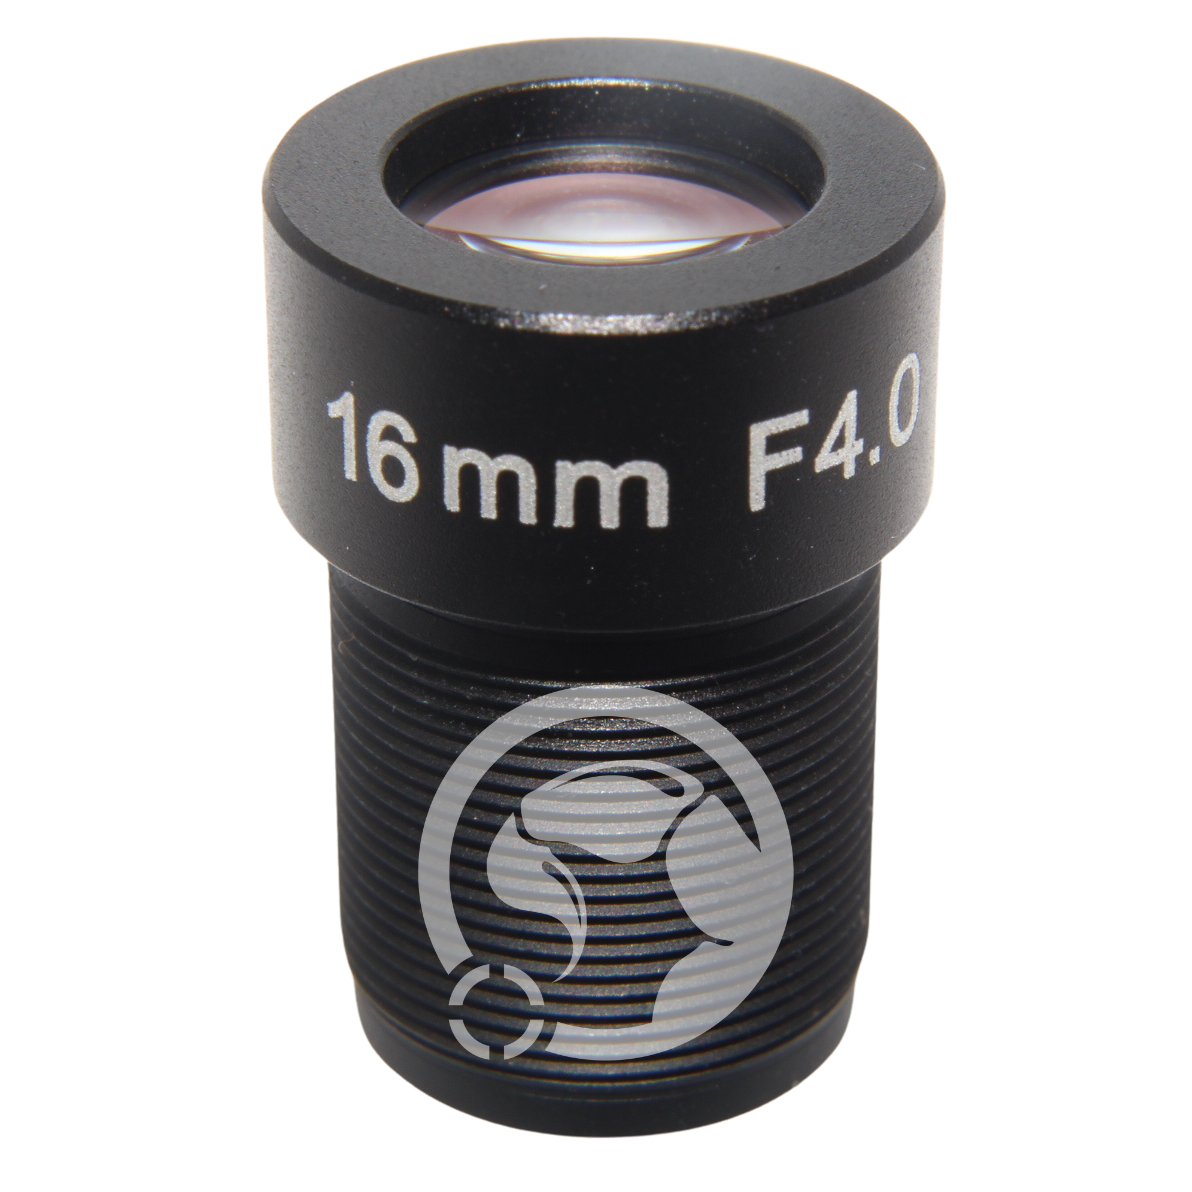 M12 Lens 16mm F4.0